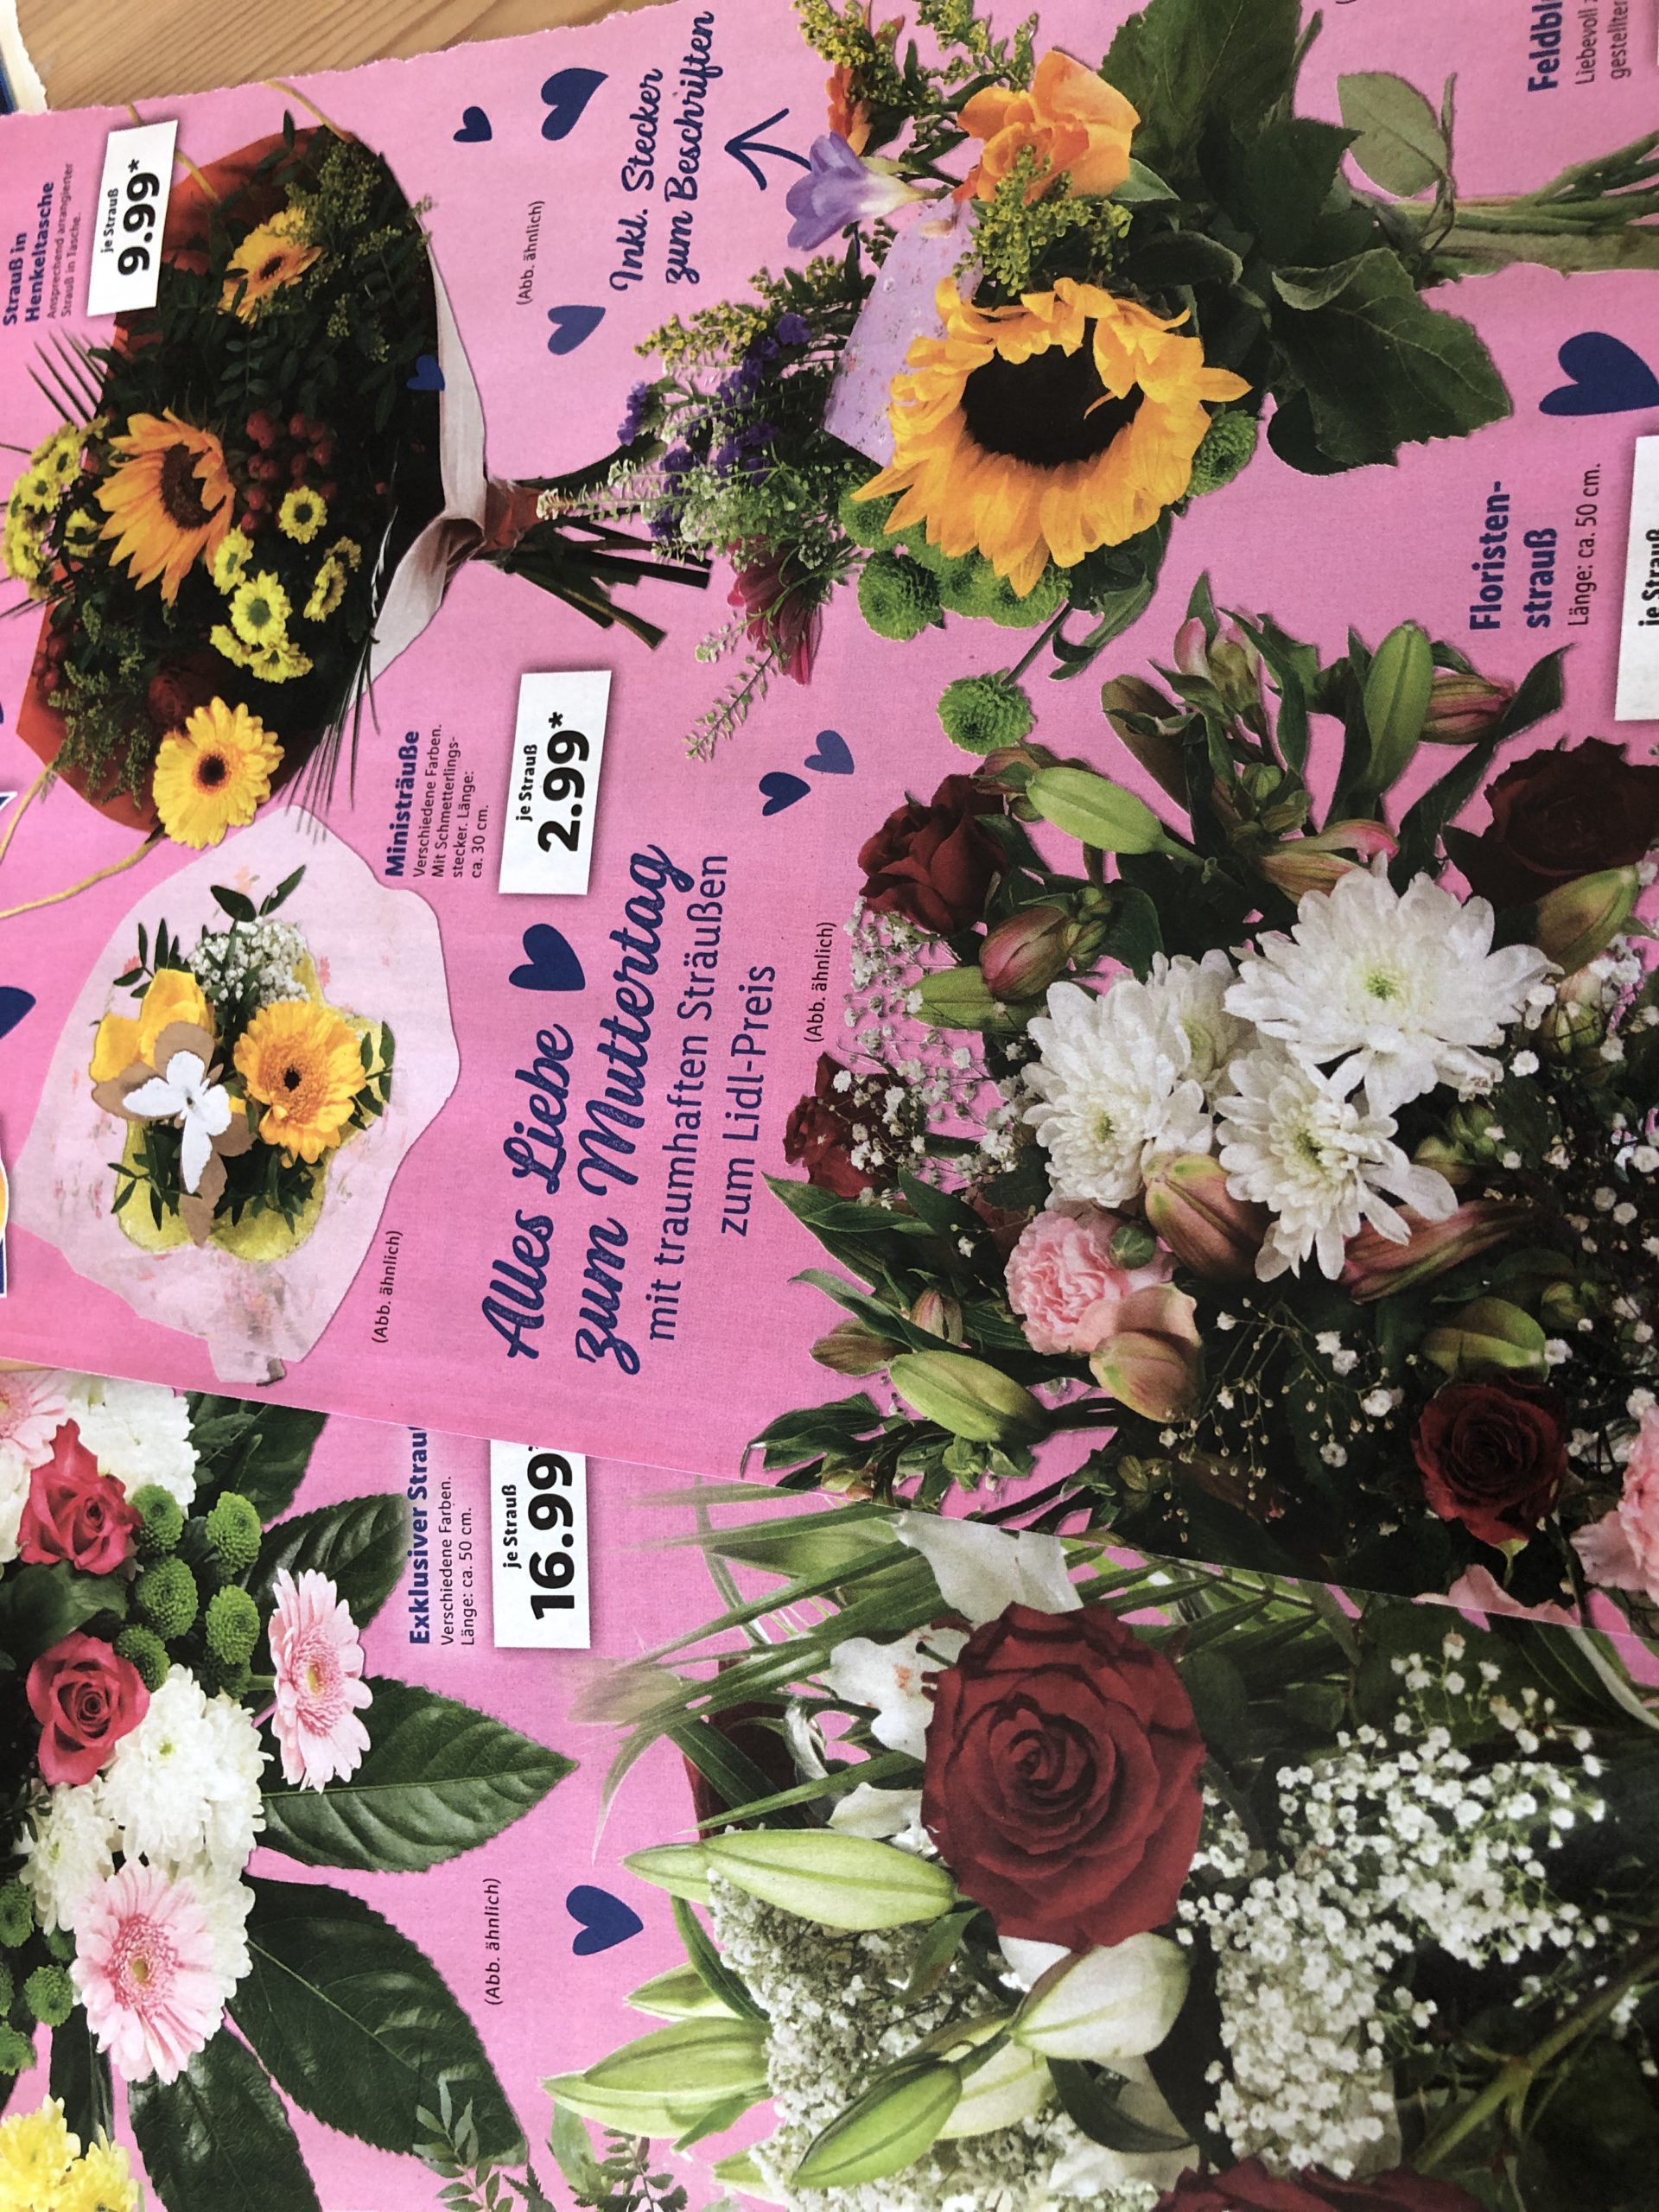 Bild zum Schritt 1 für das Bastel- und DIY-Abenteuer für Kinder: 'Aus den Werbeprospekten Bilder mit Blumenmotiven heraustrennen.'